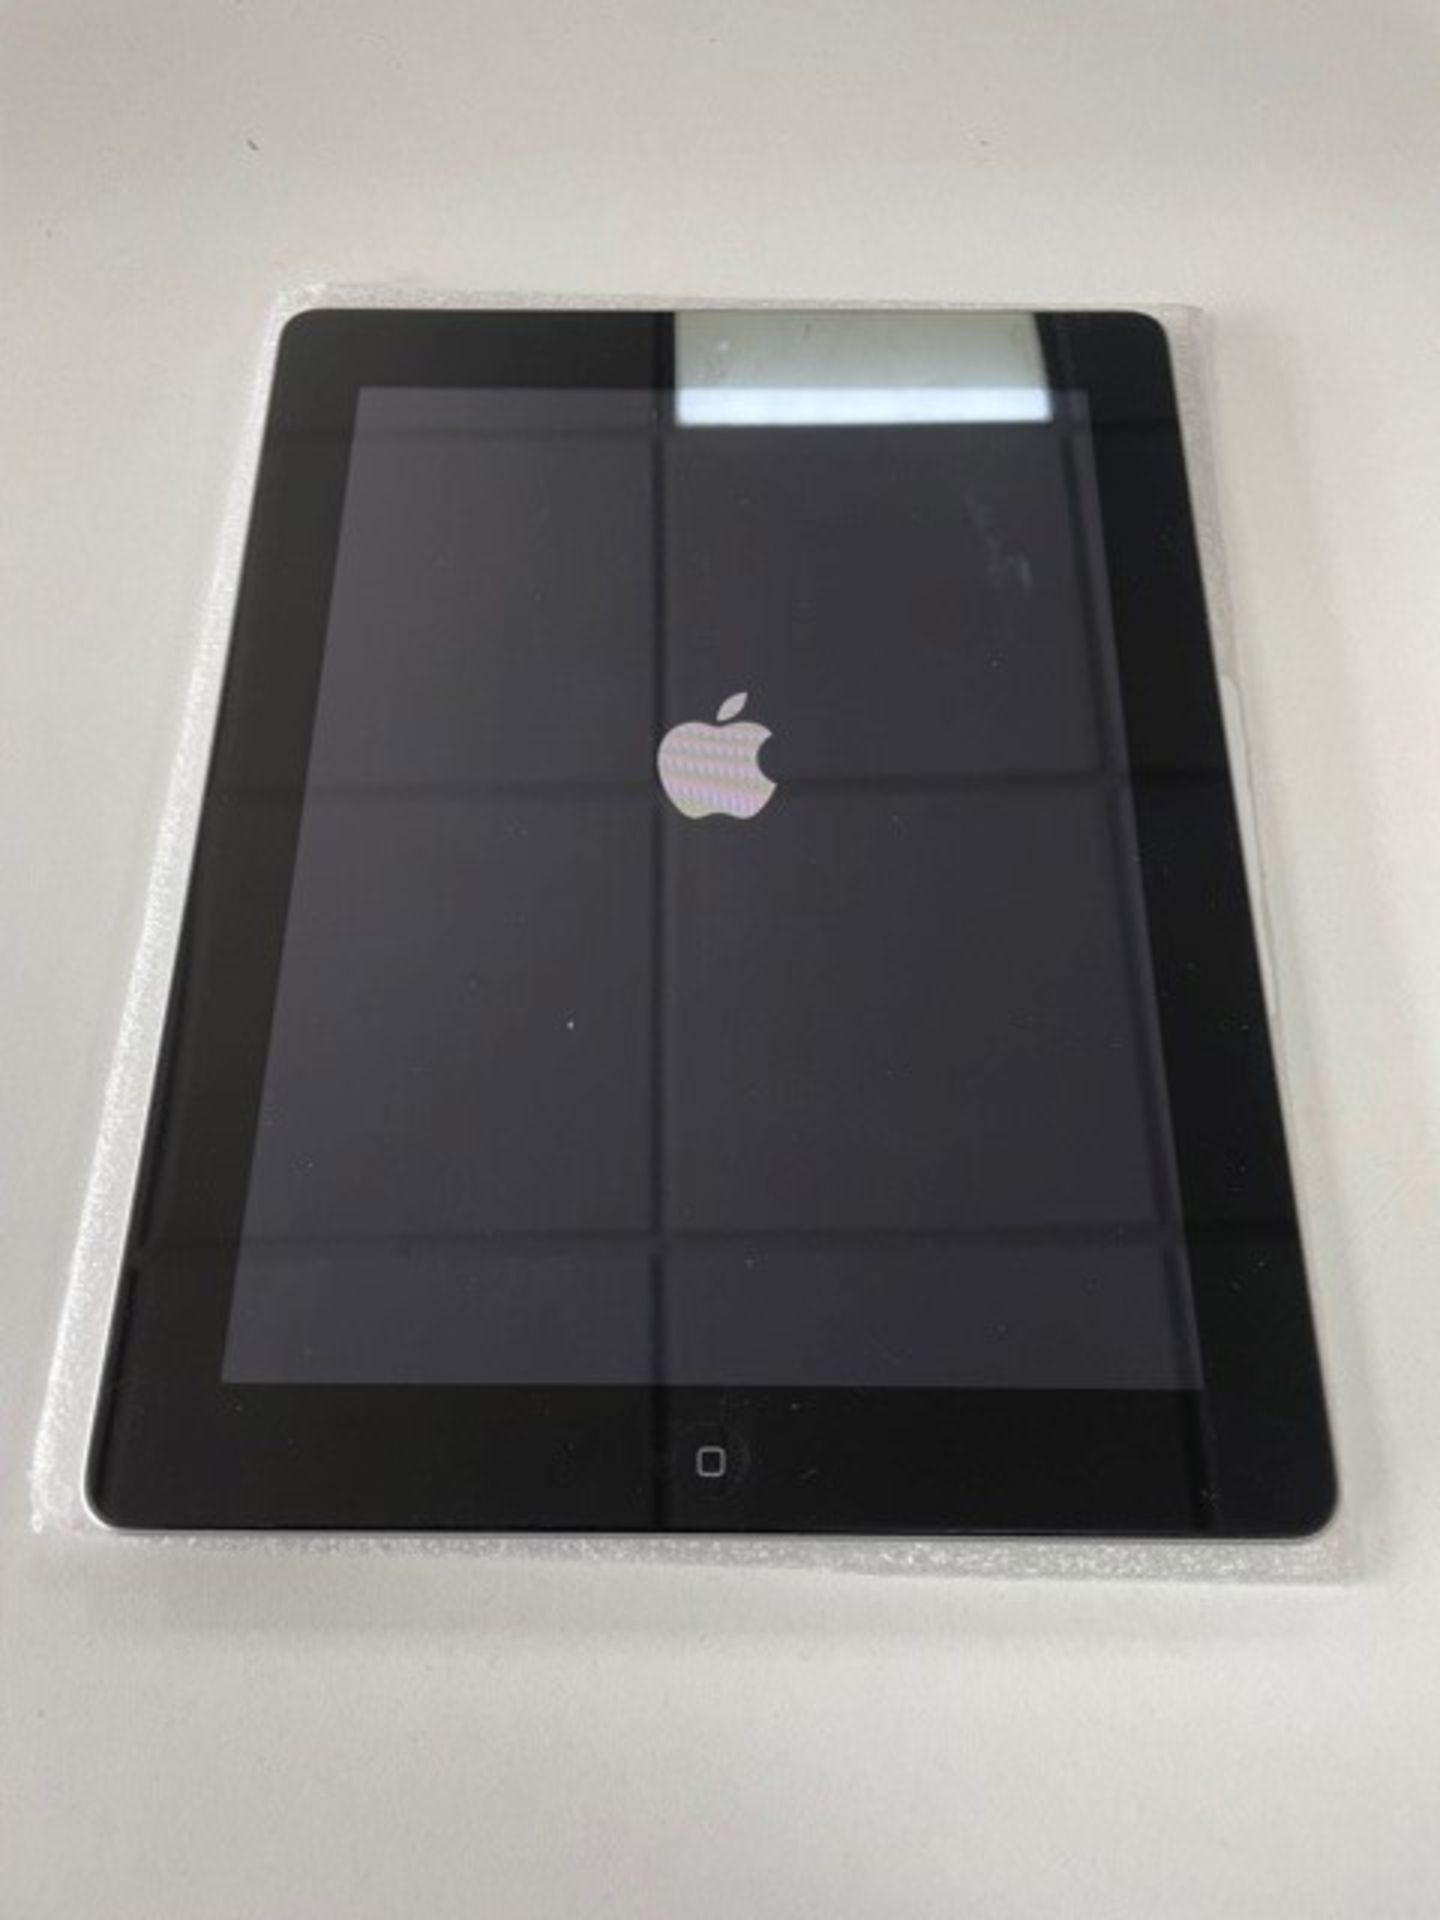 Used Apple iPad 2 Tablet | 16GB | DN6FRJXMDFJ1 - Image 4 of 5